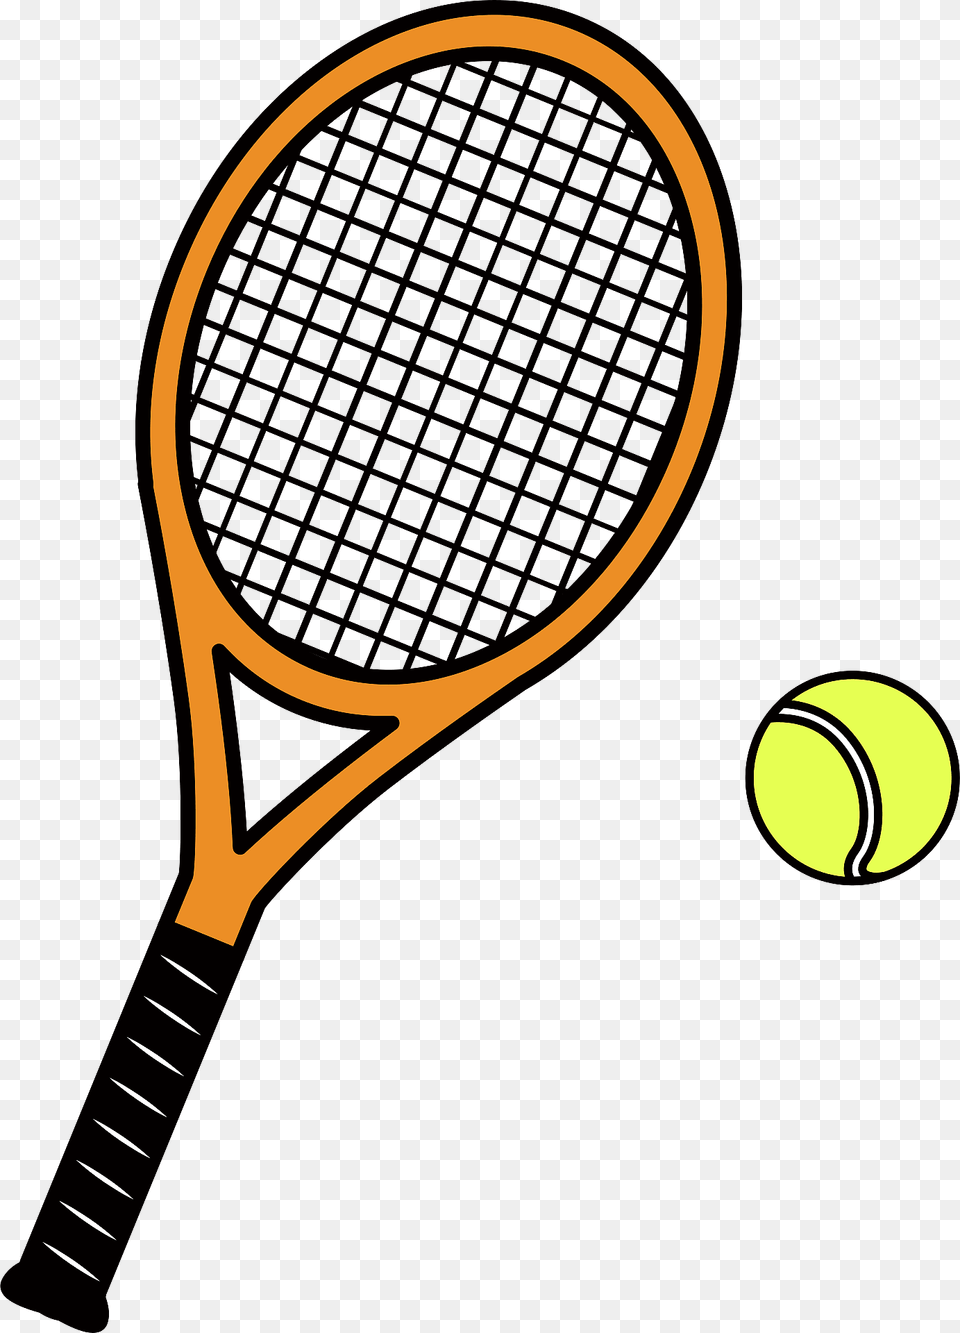 Tennis Racket And Ball Clipart, Sport, Tennis Ball, Tennis Racket Free Png